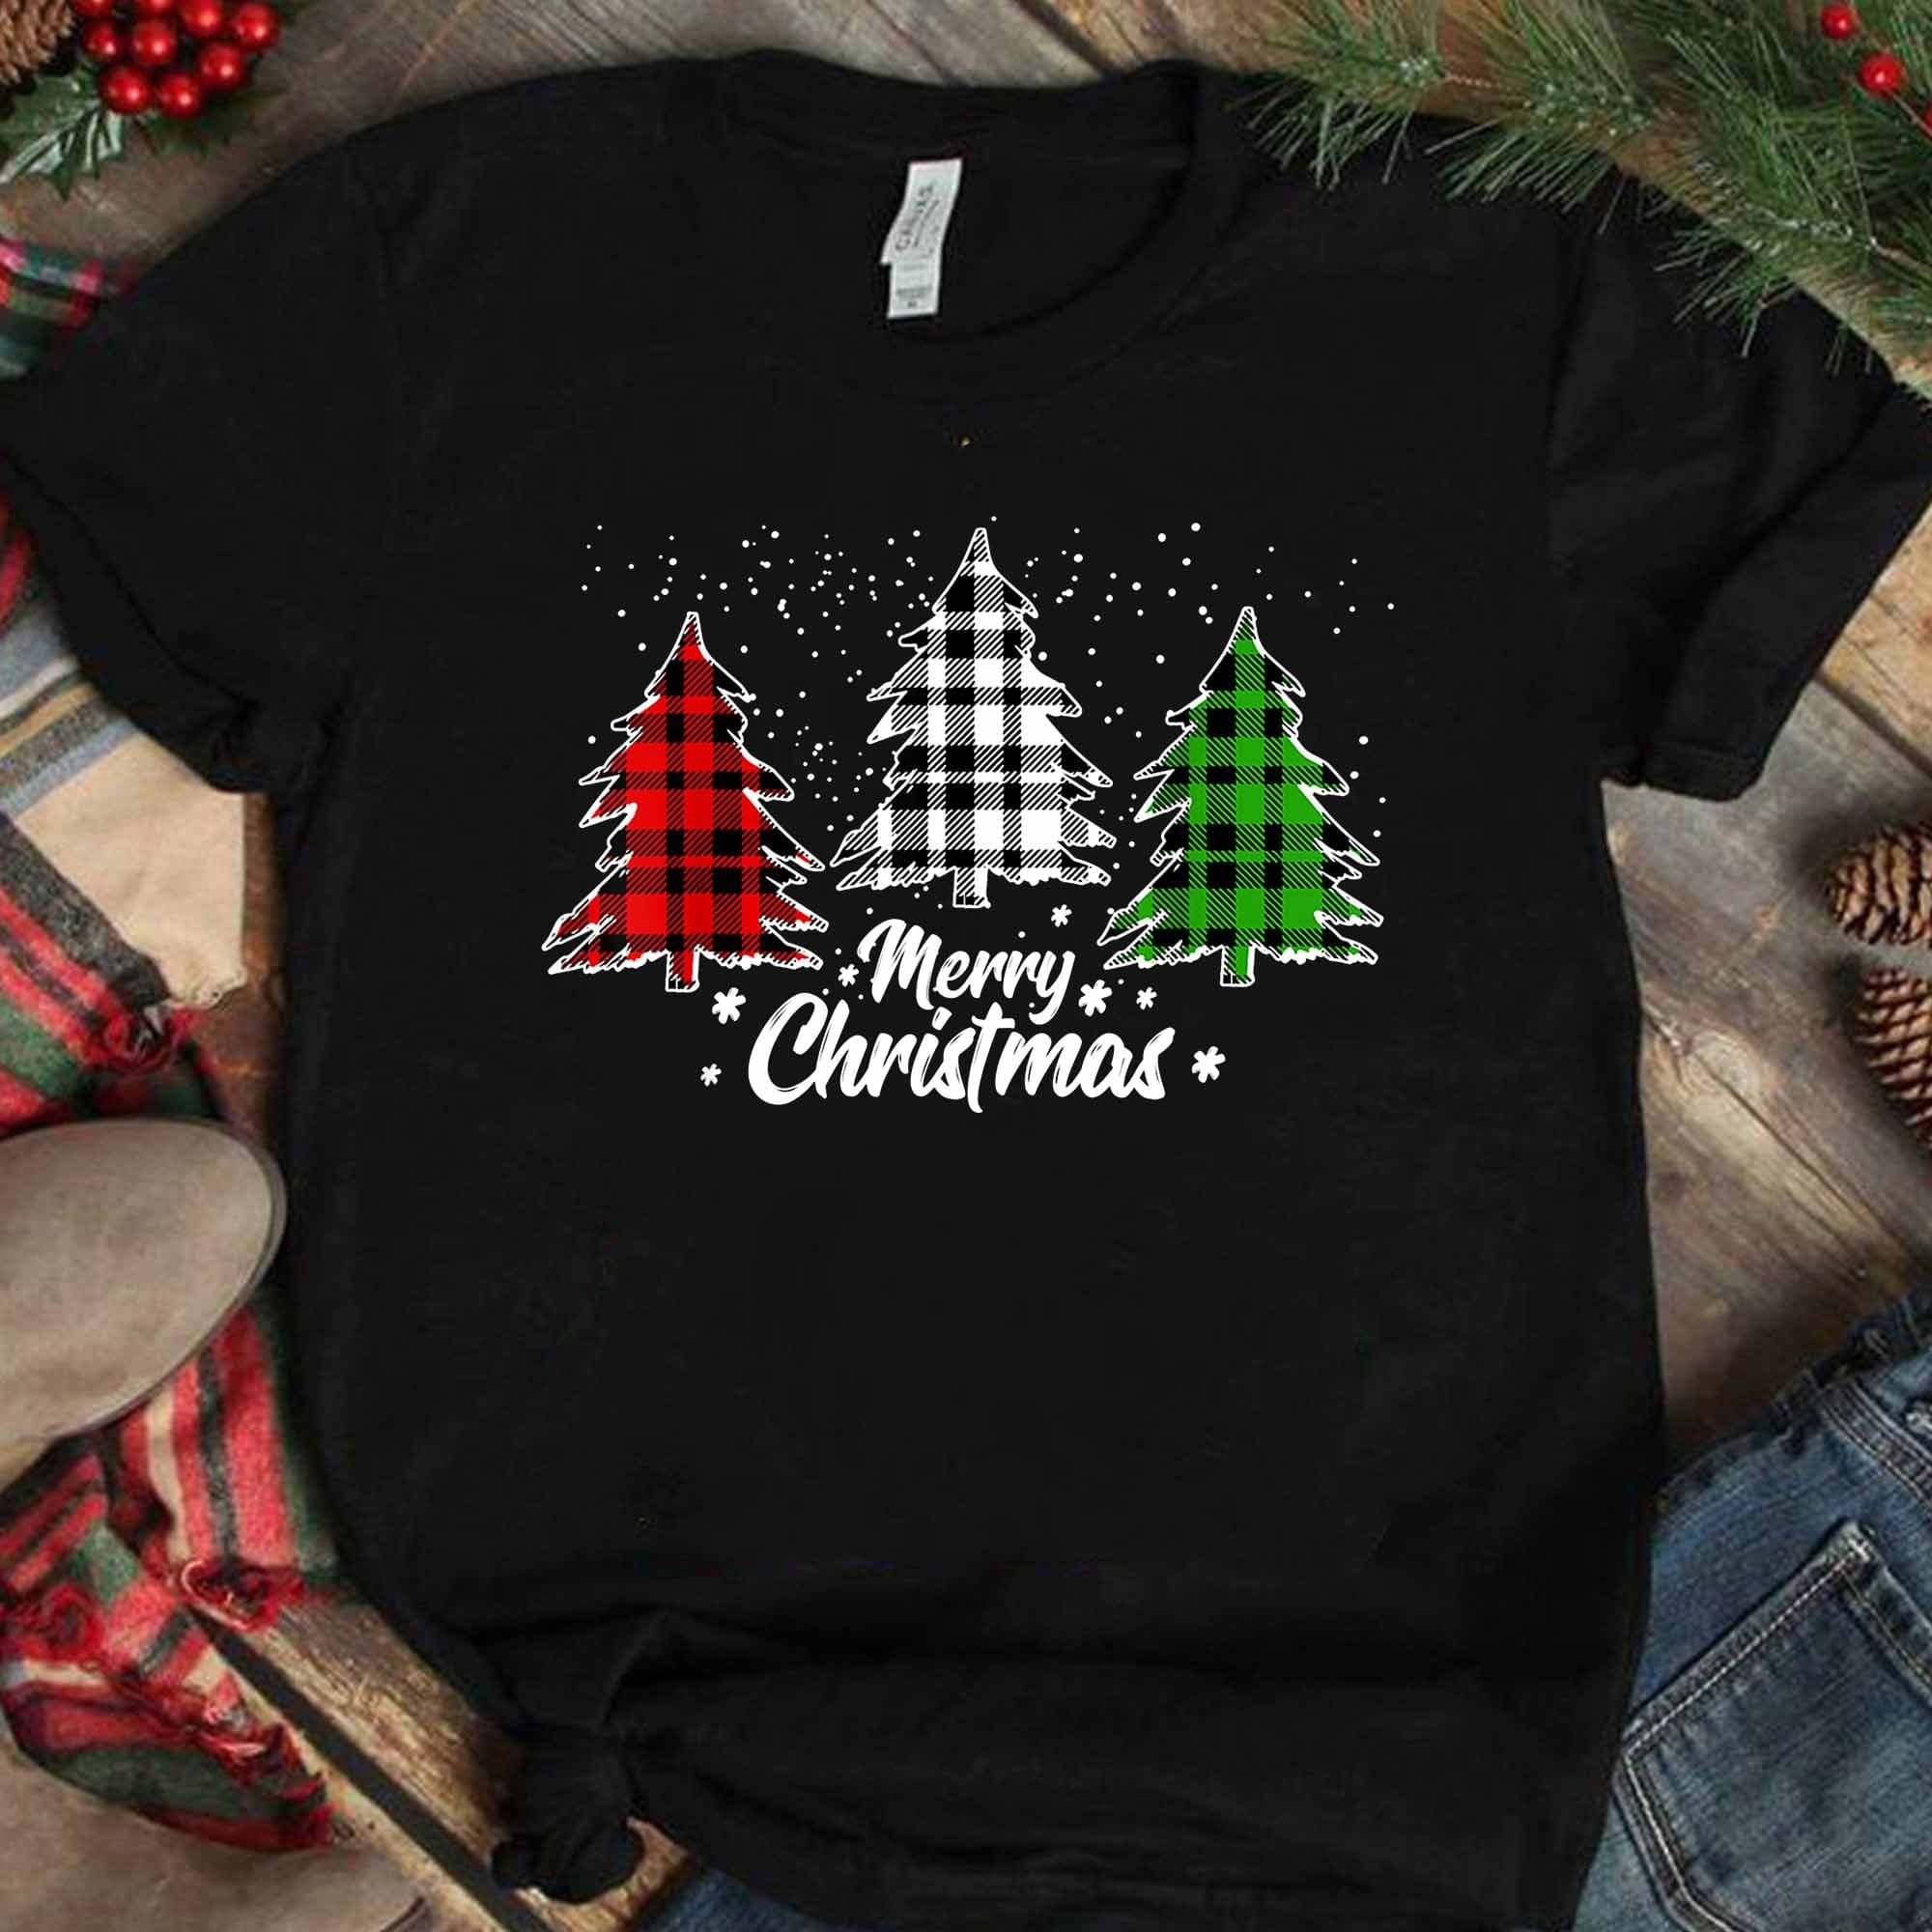 Merry Christmas T-shirt - Colorful Christmas tree, Christmas ugly sweater